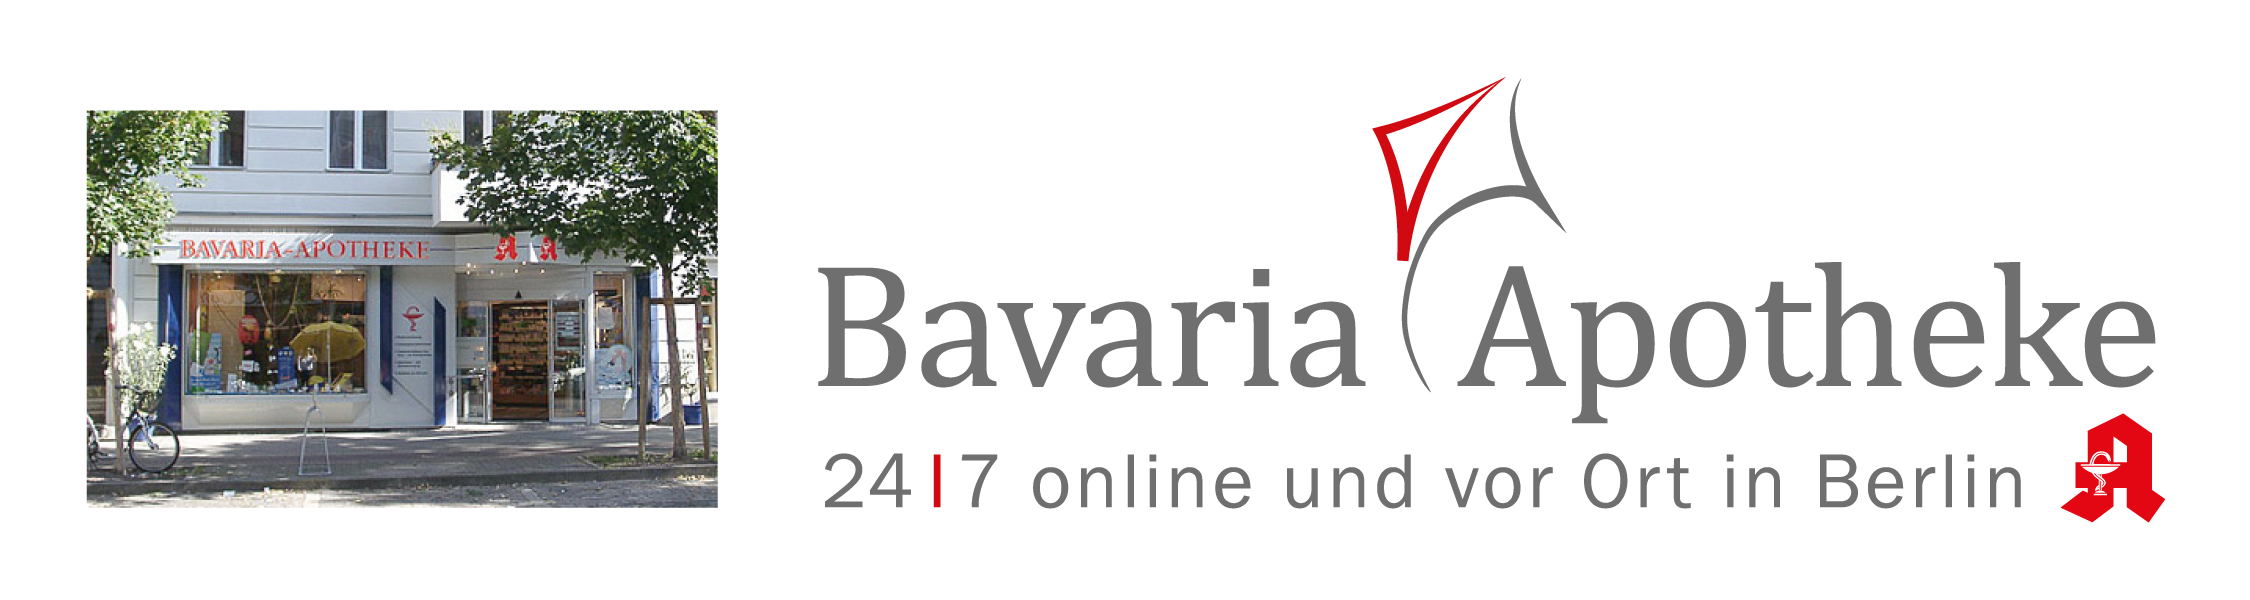 Bavaria_Slider1.jpg